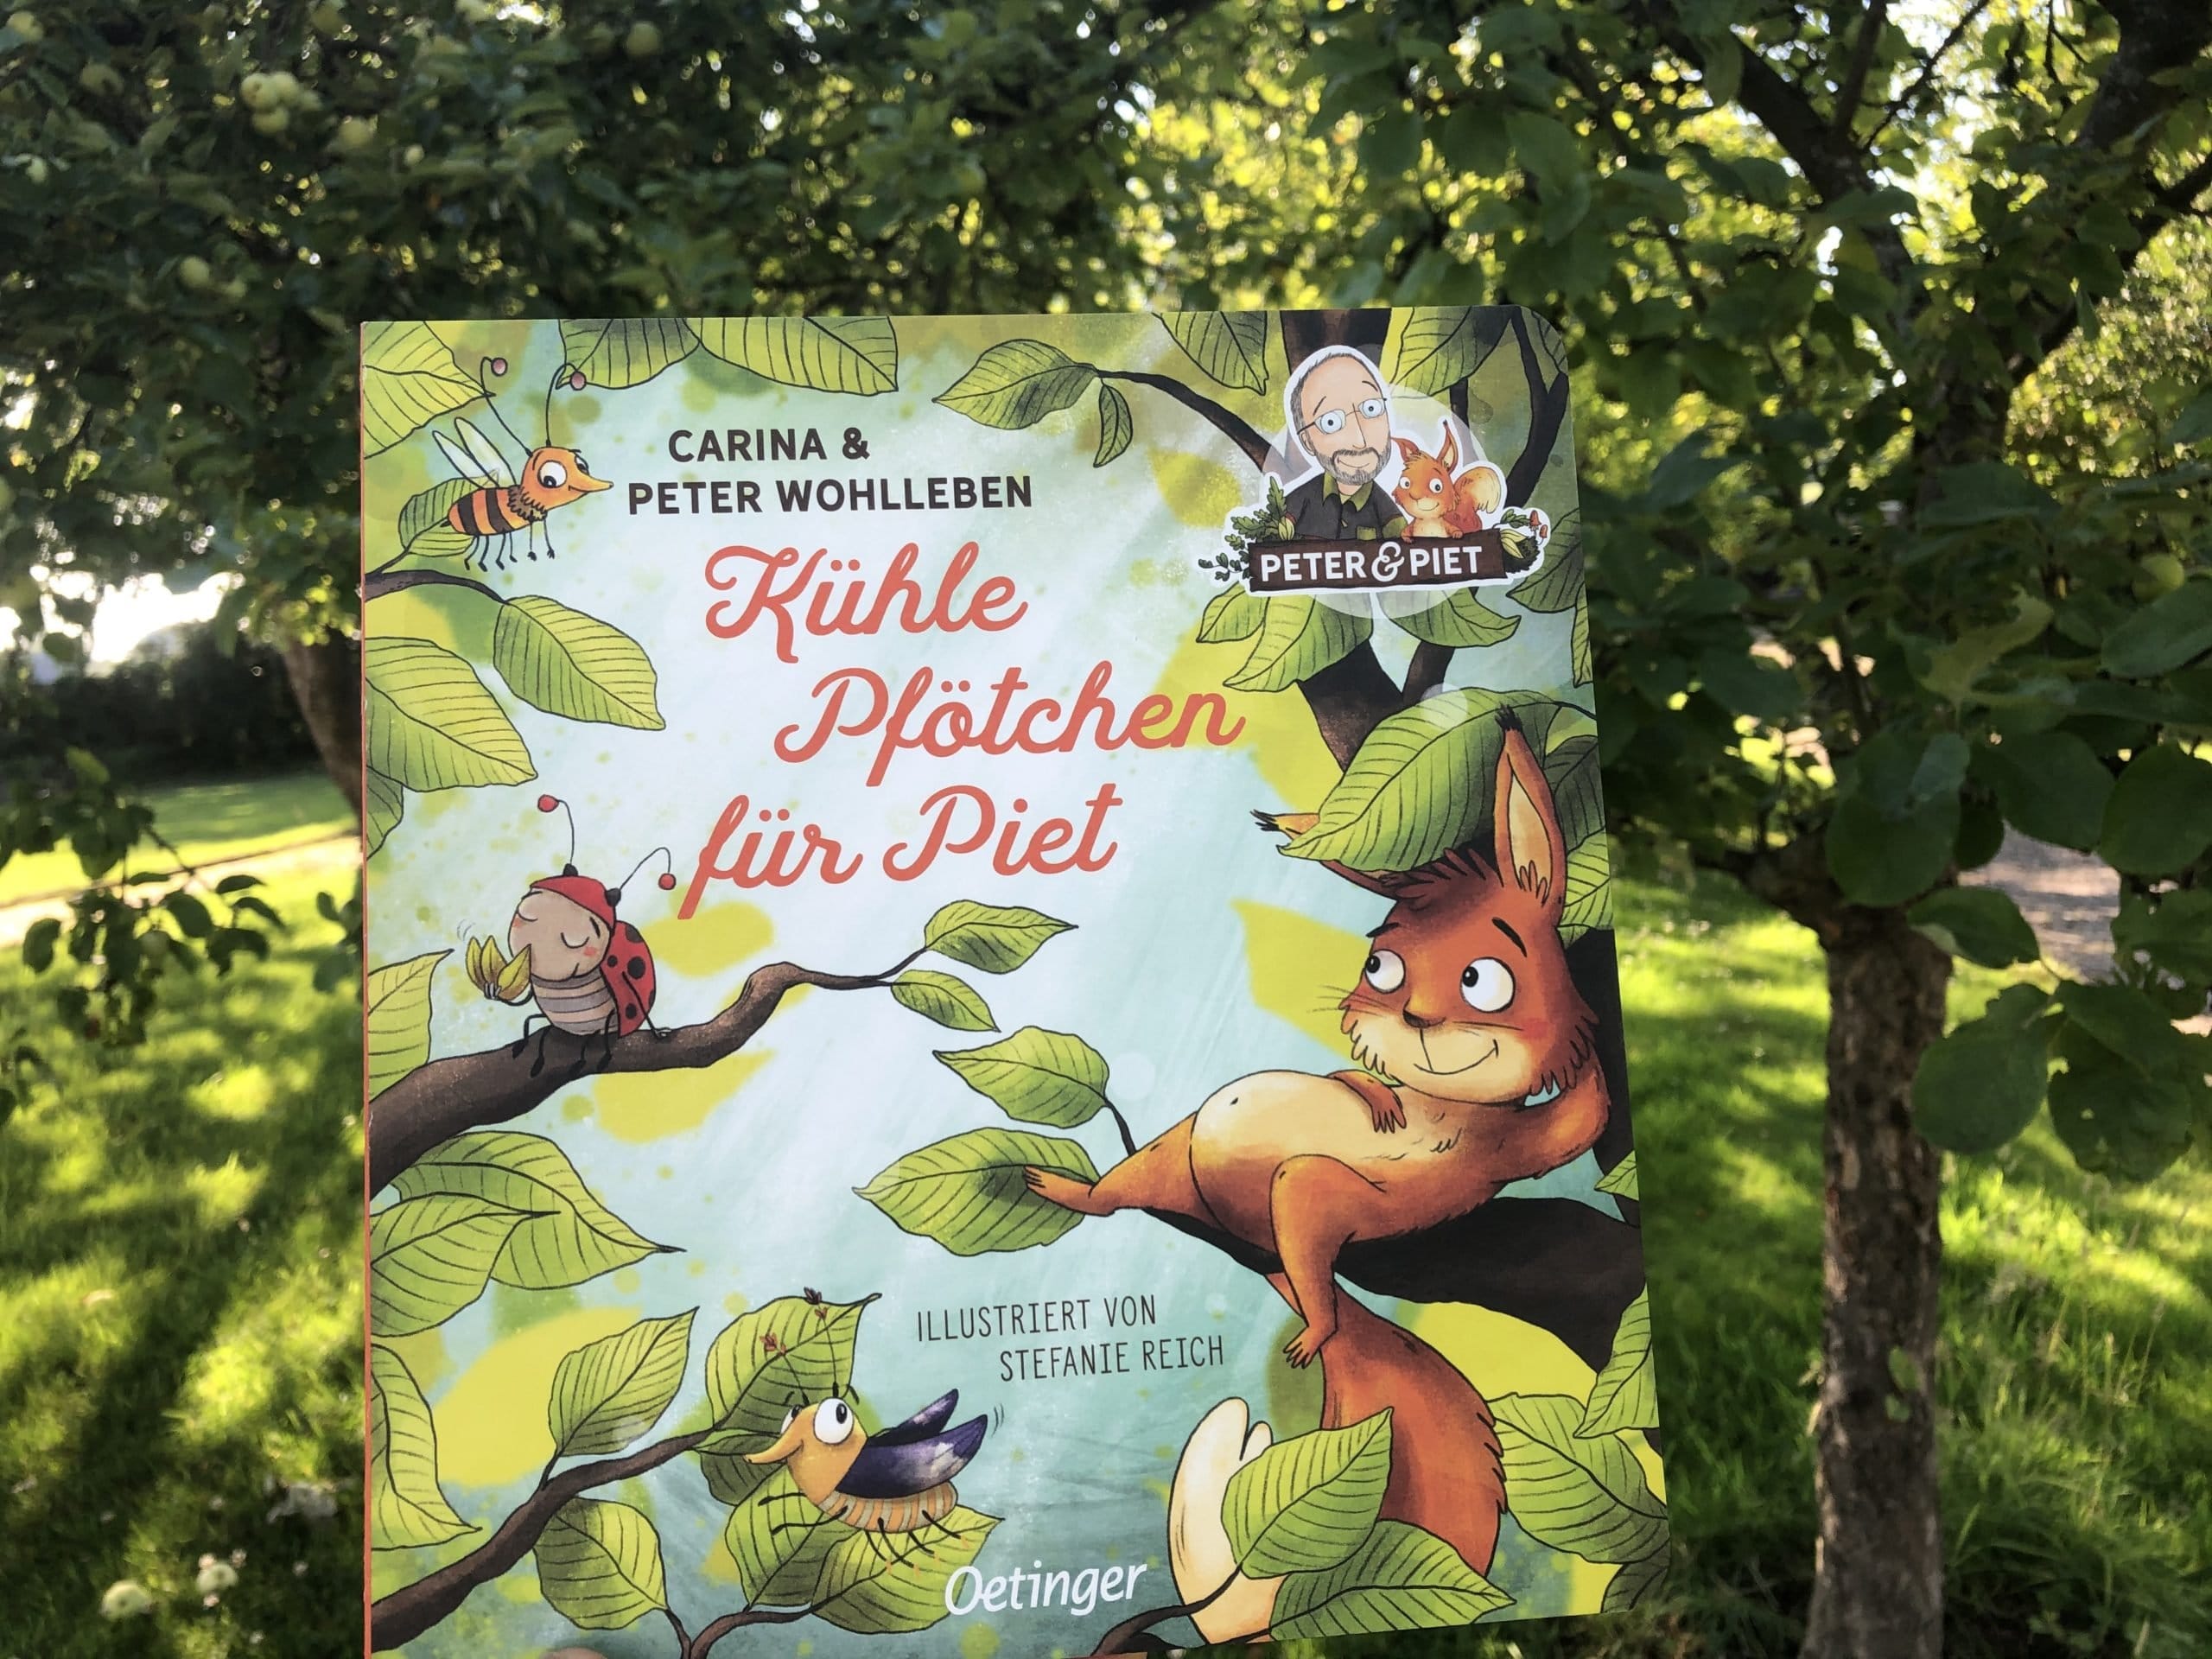 Lieblings-Kinderbuch: Wie uns Carina und Peter Wohlleben von ihrem kleinen Eichhörnchen Piet überzeugten